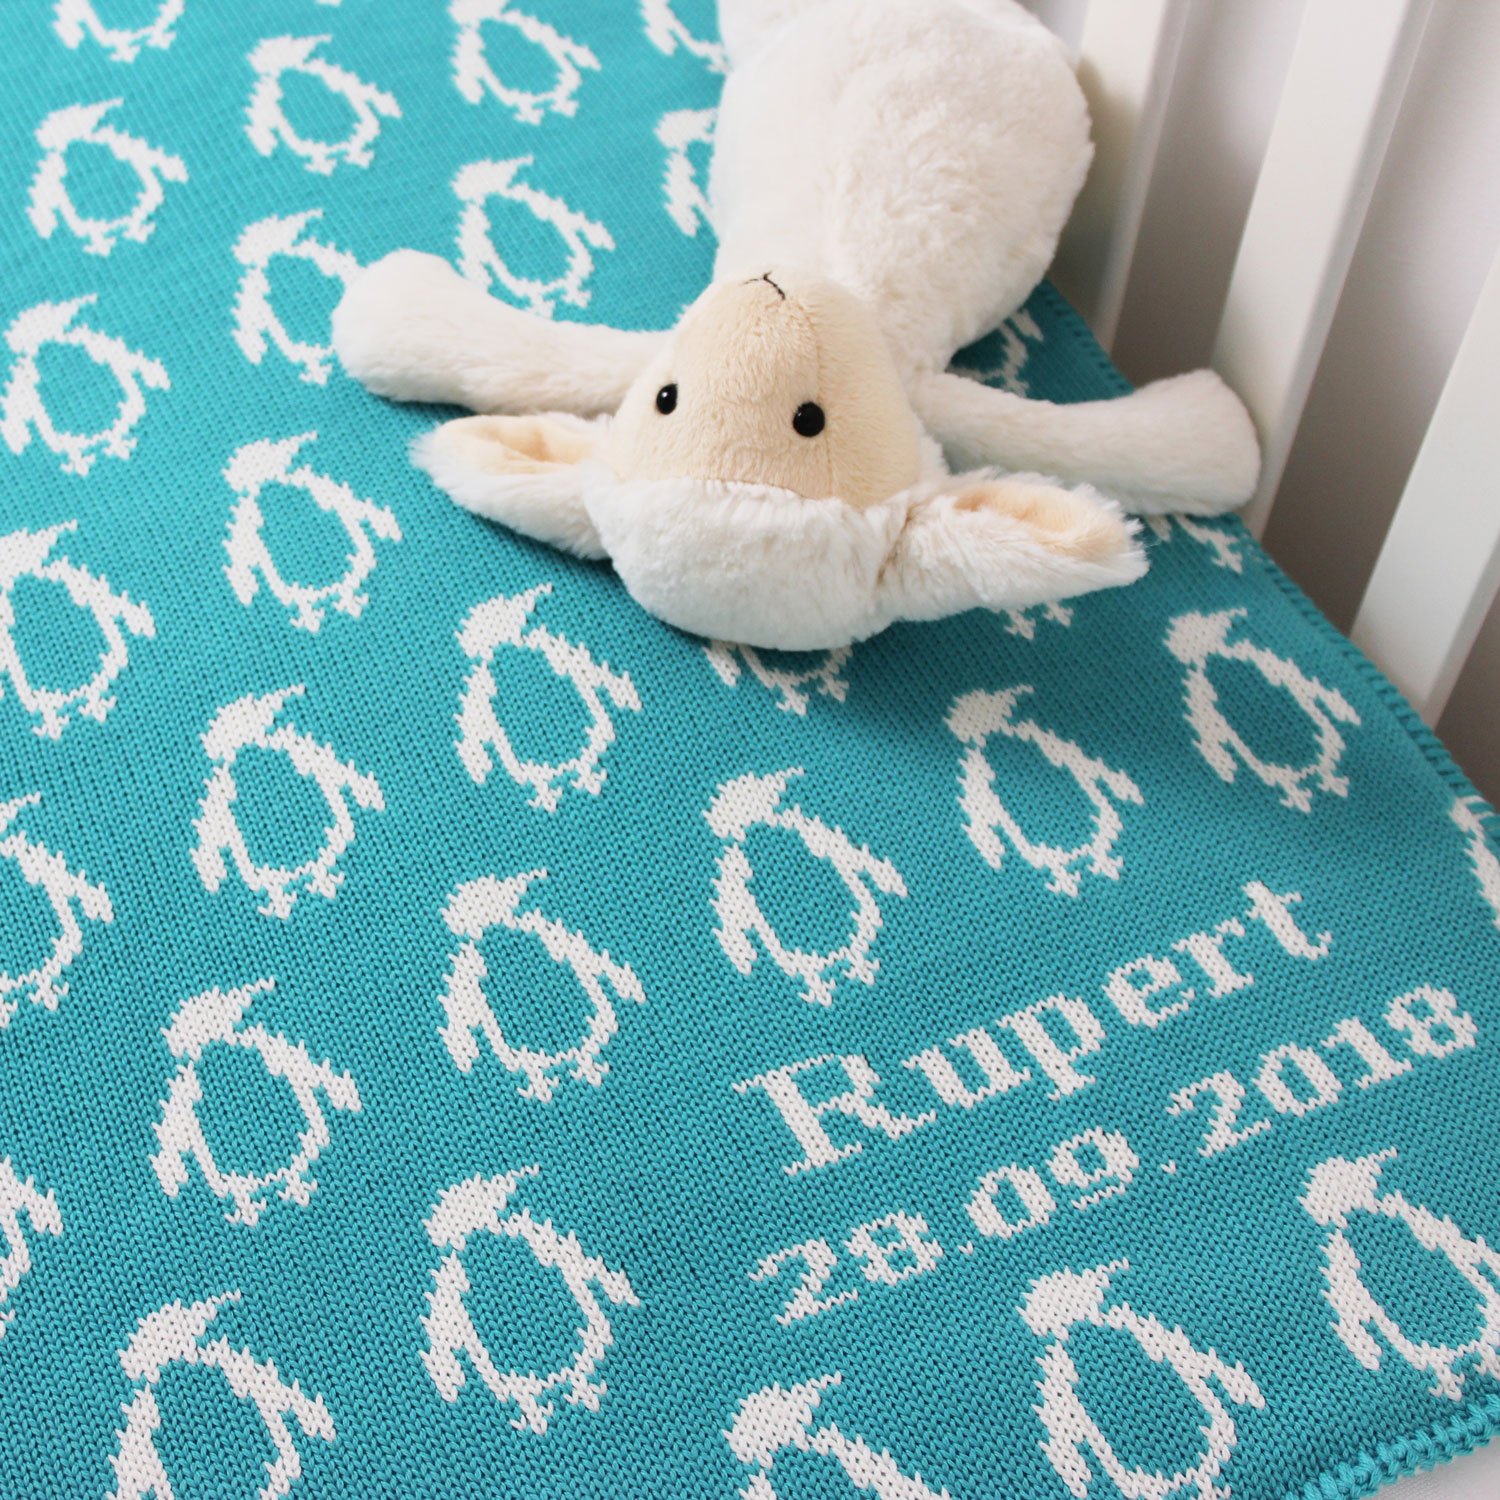 Rupert-blanket2.jpg